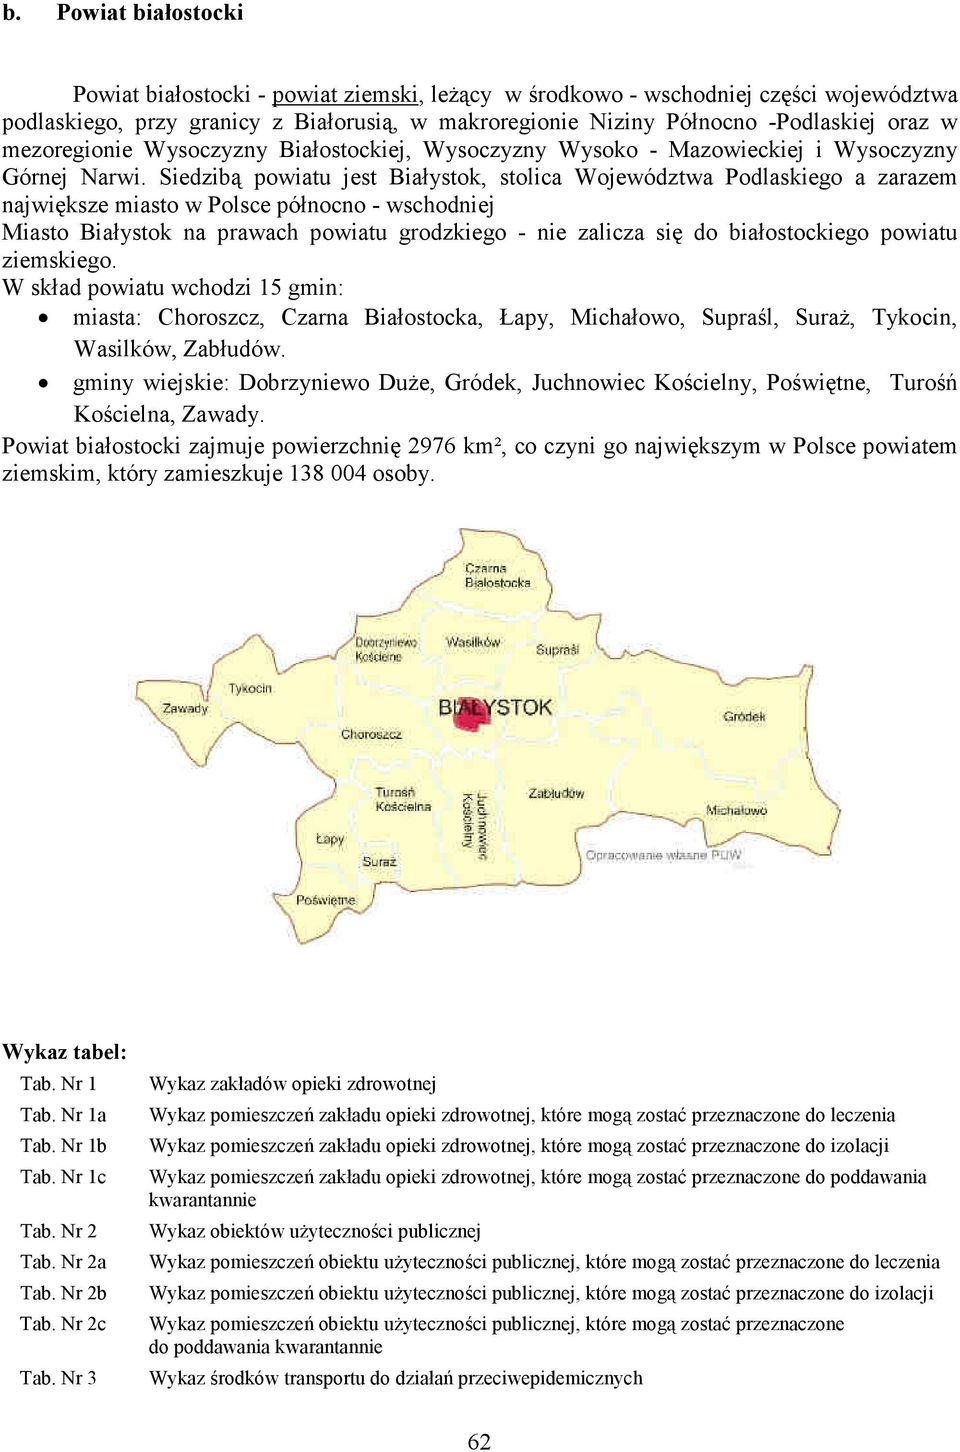 Siedzibą powiatu jest Białystok, stolica Województwa Podlaskiego a zarazem największe miasto w Polsce północno - wschodniej Miasto Białystok na prawach powiatu grodzkiego - nie zalicza się do